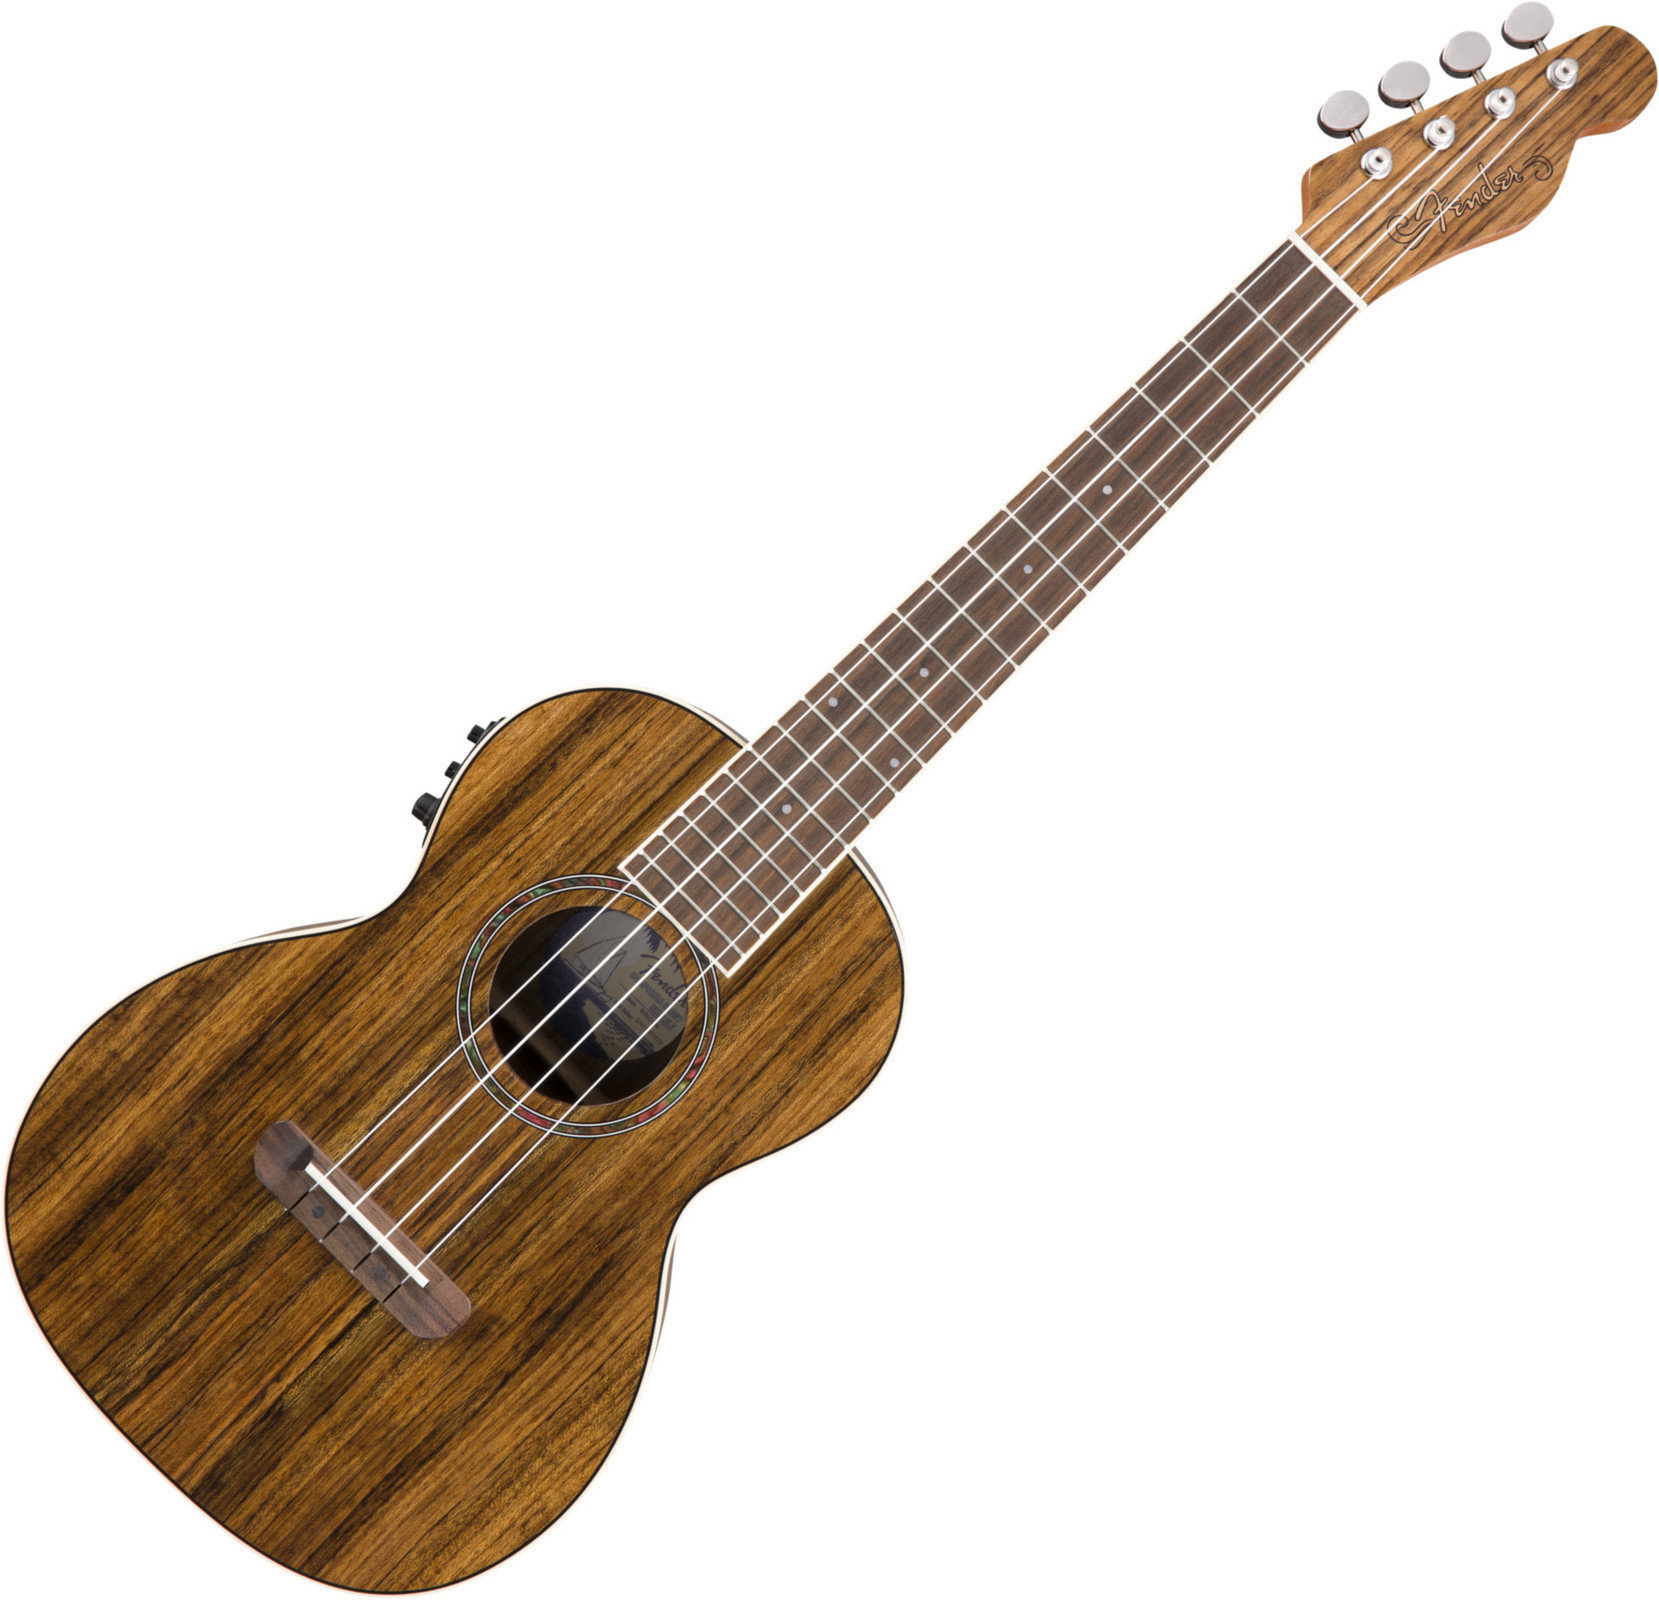 Tenor-ukuleler Fender Rincon Tenor-ukuleler Natural